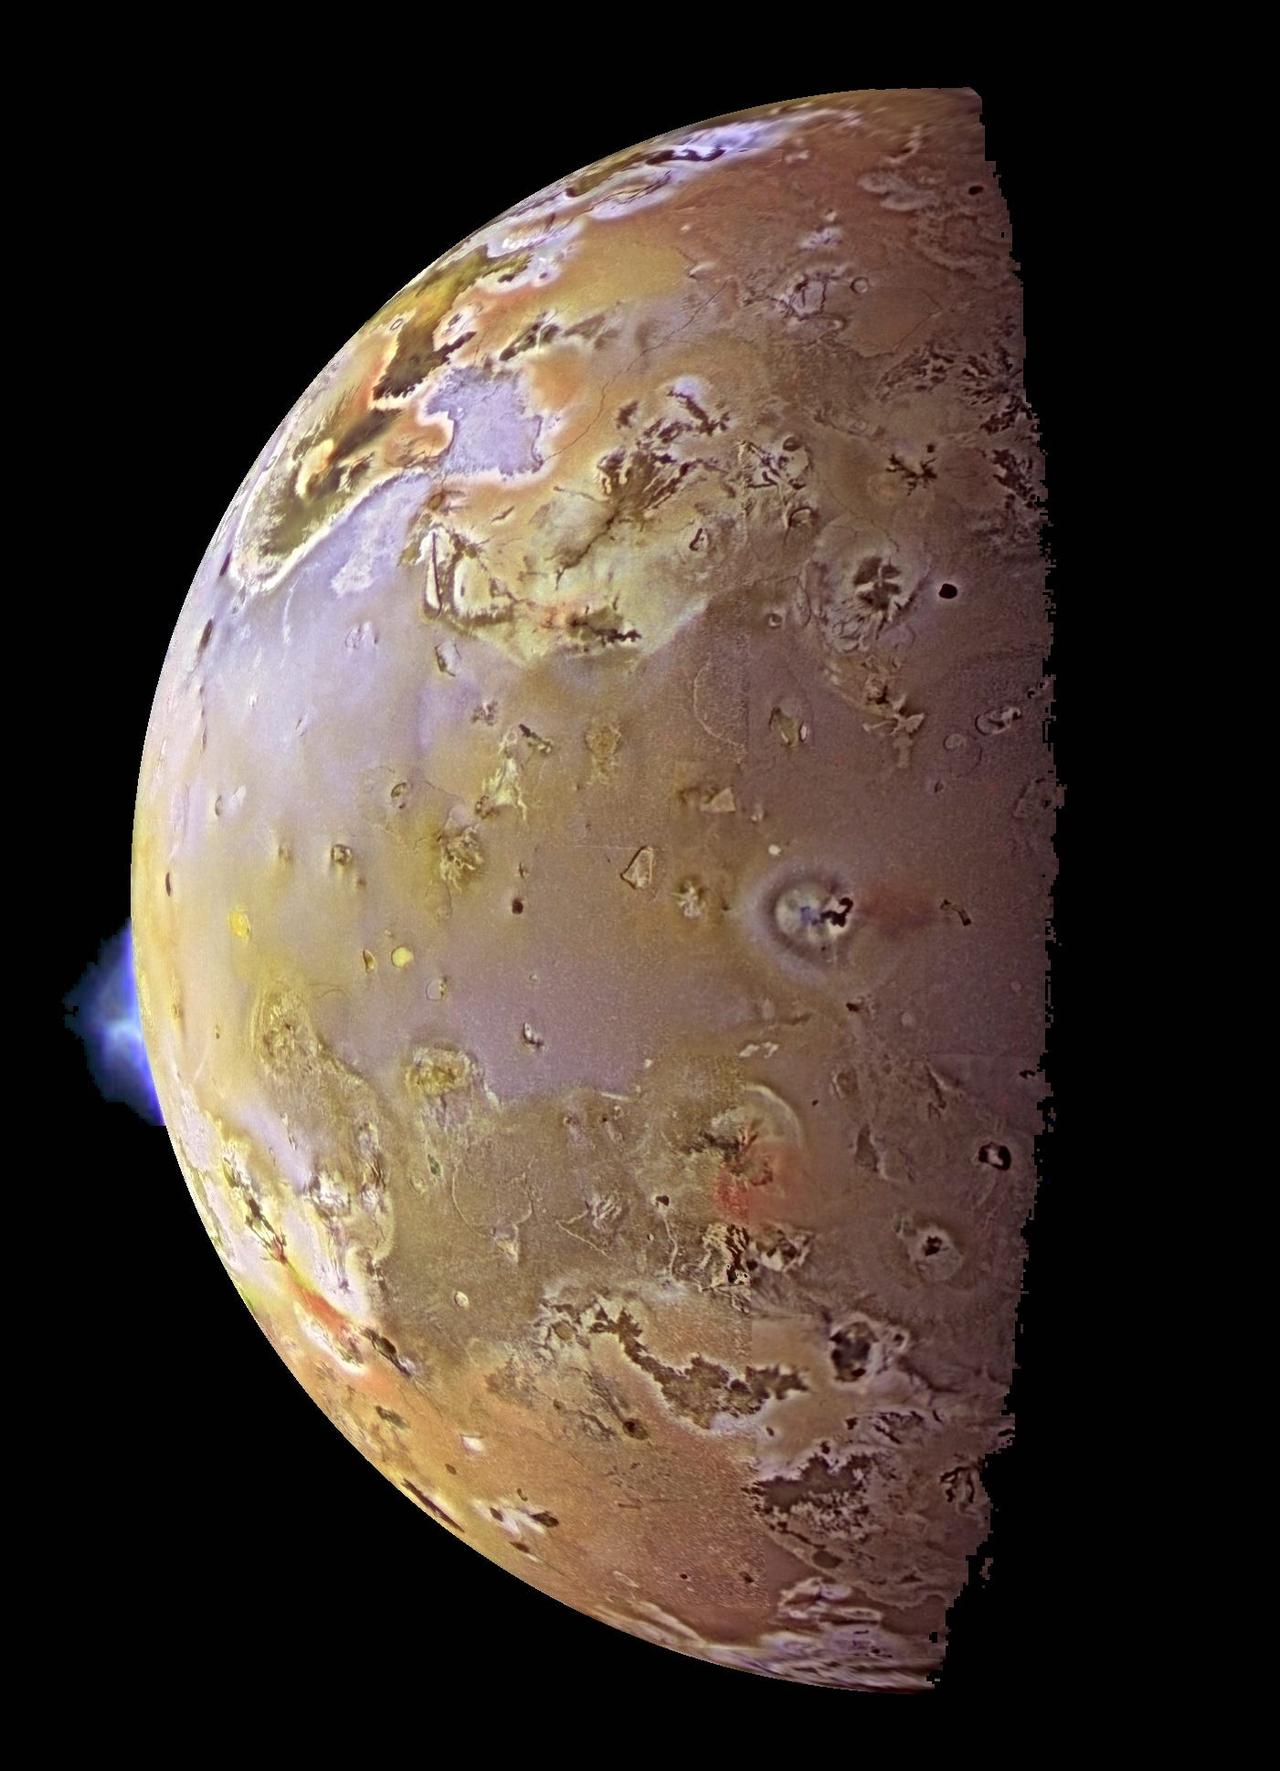 NASAの木星探査機｢ガリレオ｣が捉えたイオの画像。宇宙空間を背景に、火山が噴火する様子が捉えられている。1997年6月28日撮影。